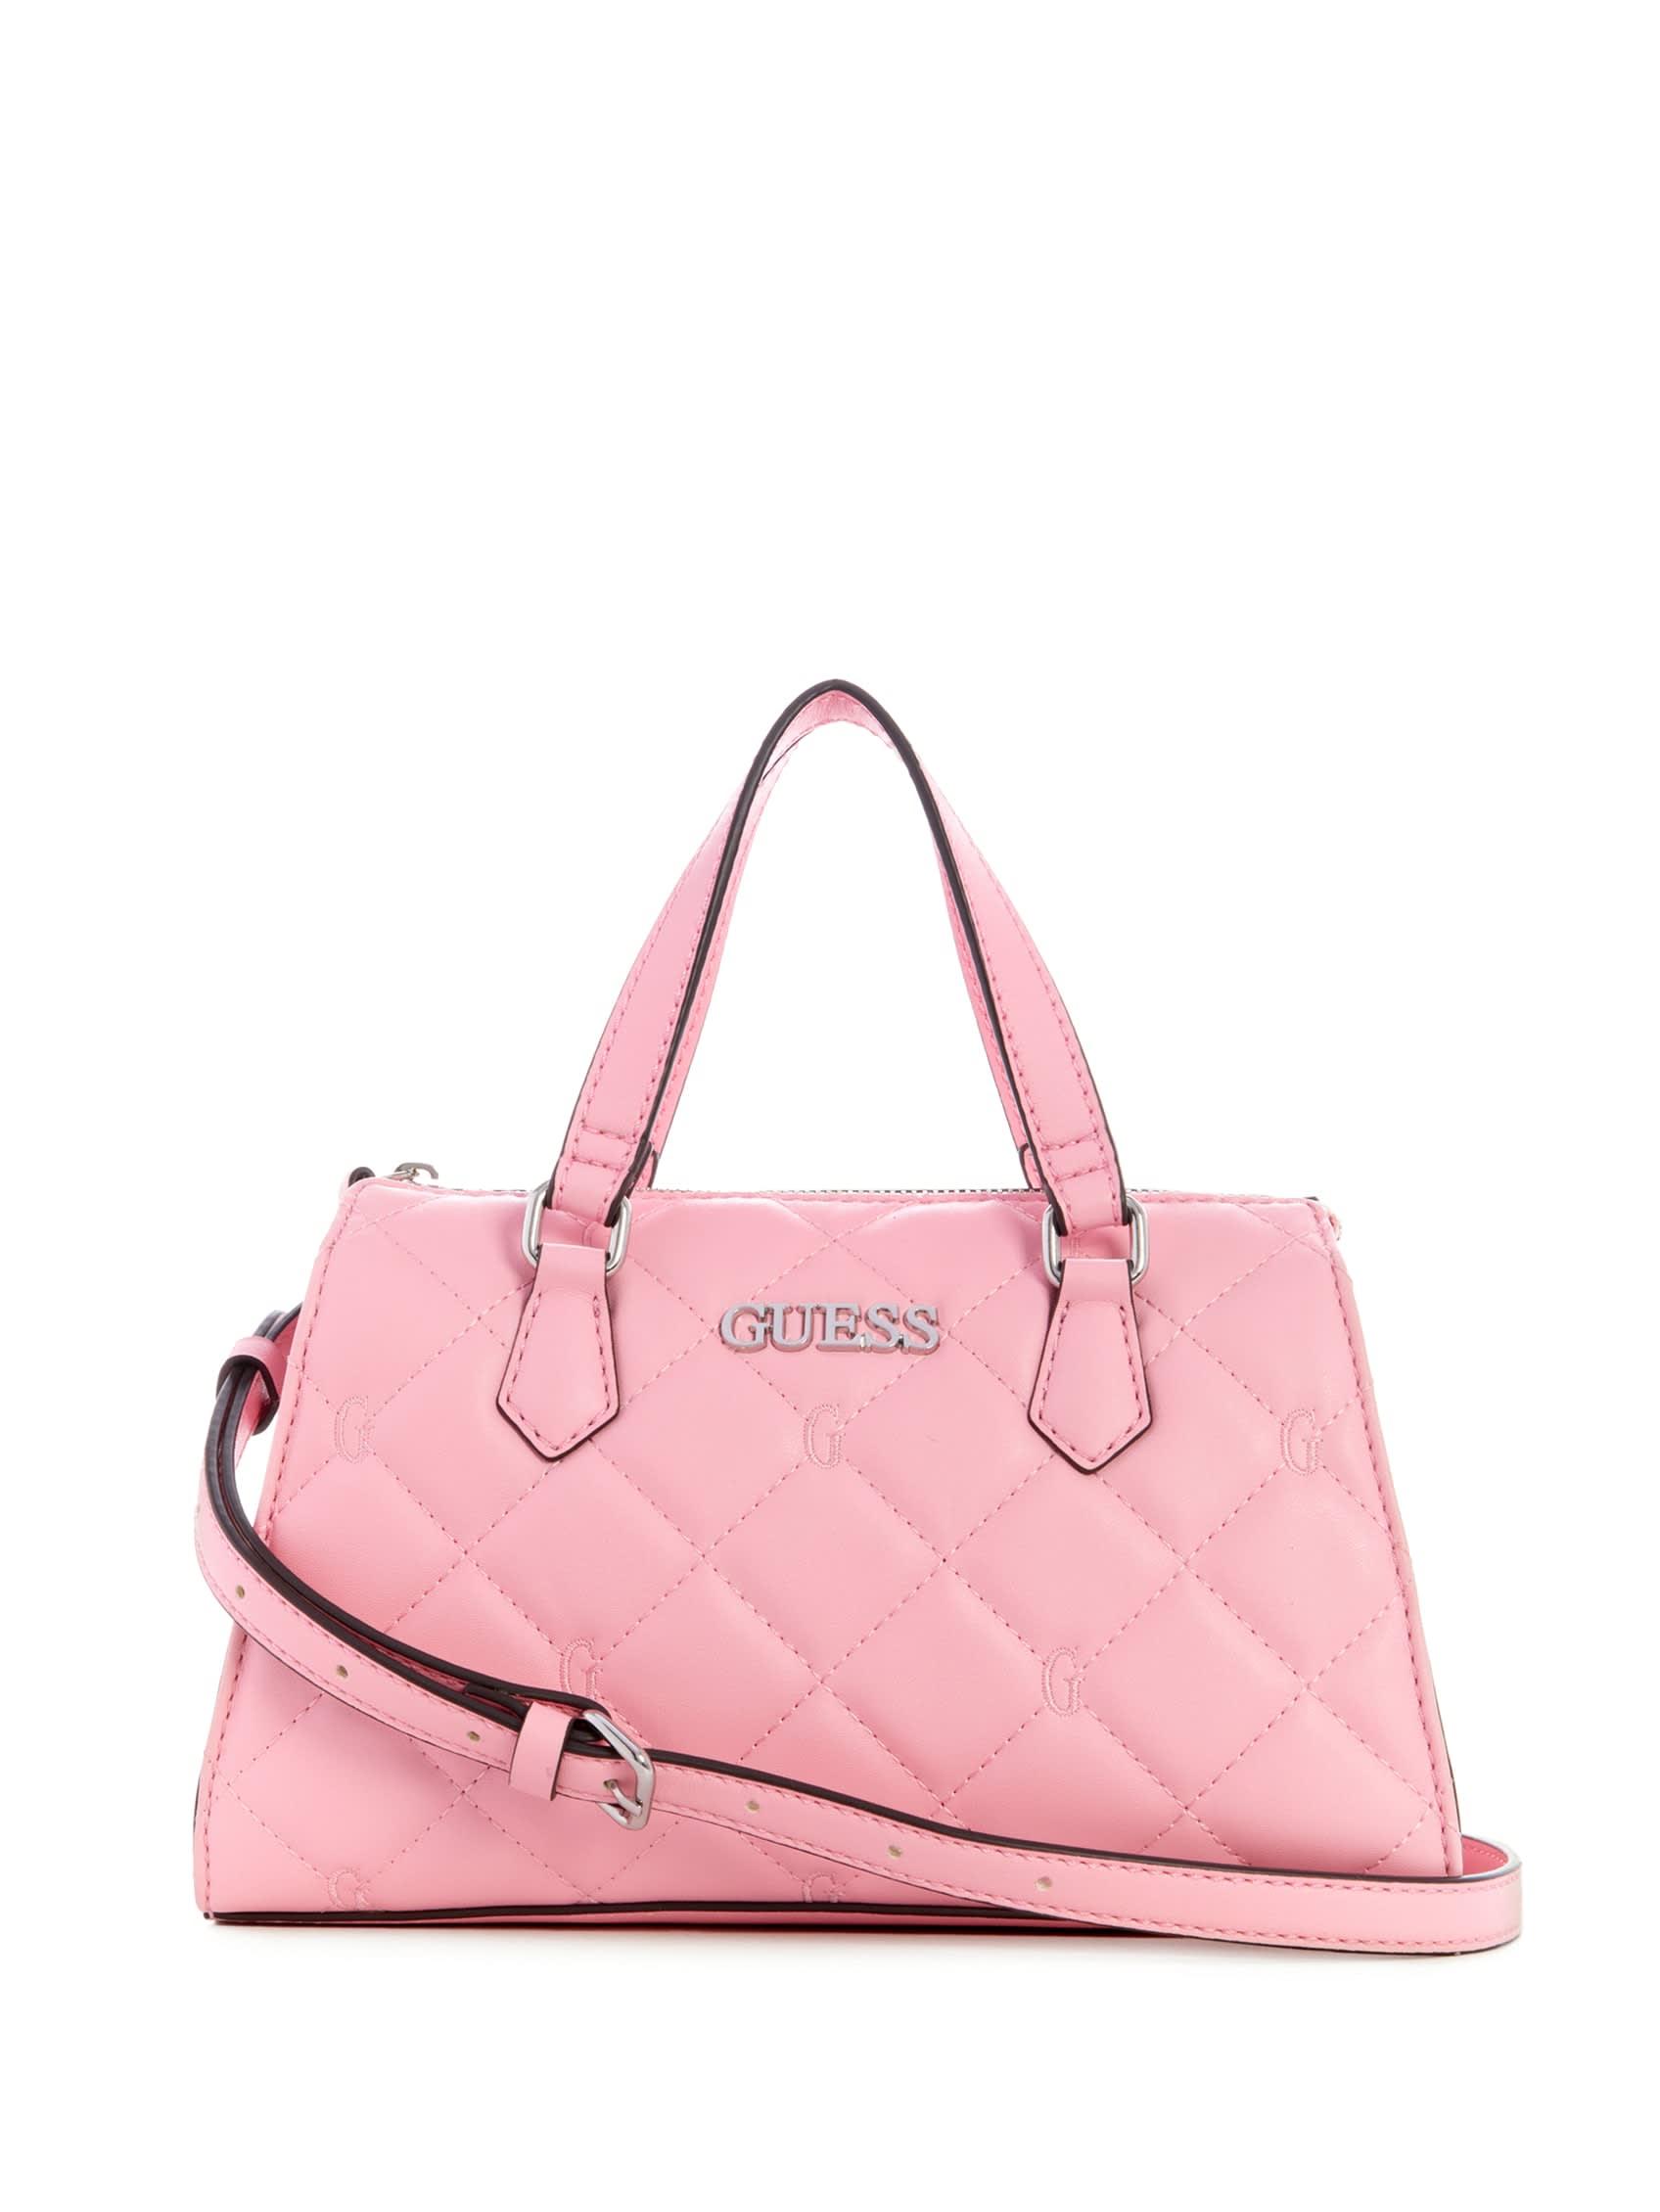 Guess pink handbag for - Gem